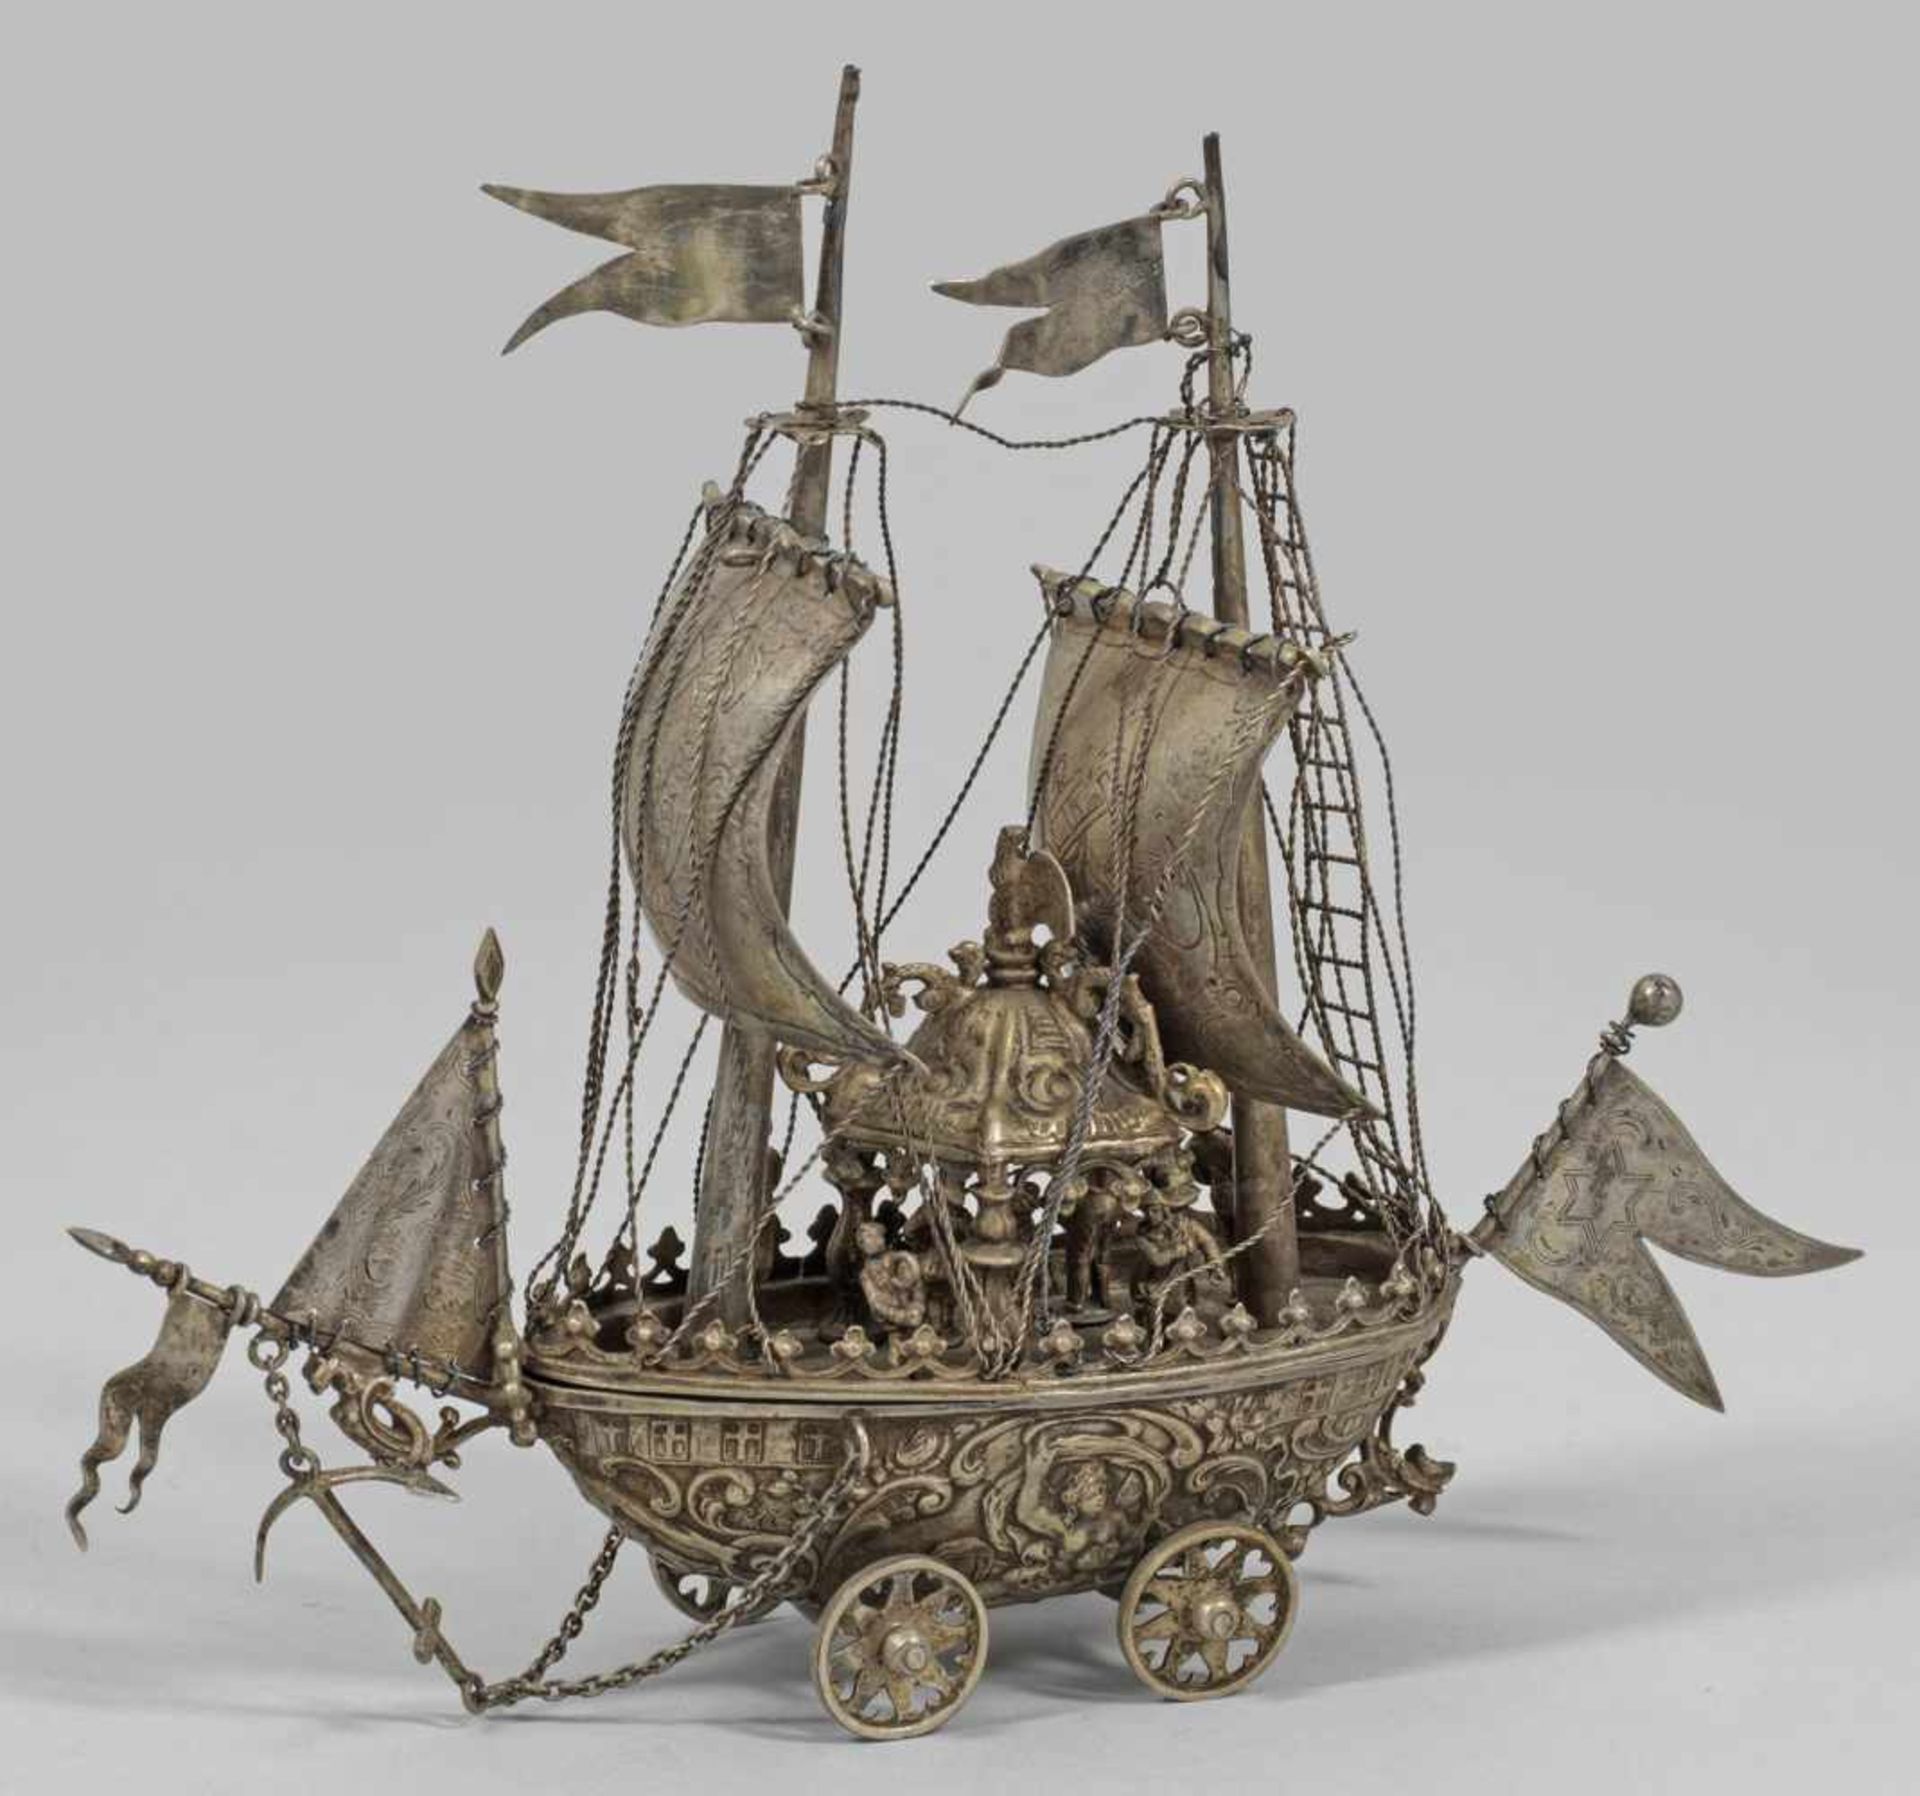 Historismus Segelschiff als TafeldekorationDeutsch. Vollplastisch und detailgetreu gearbeitetes